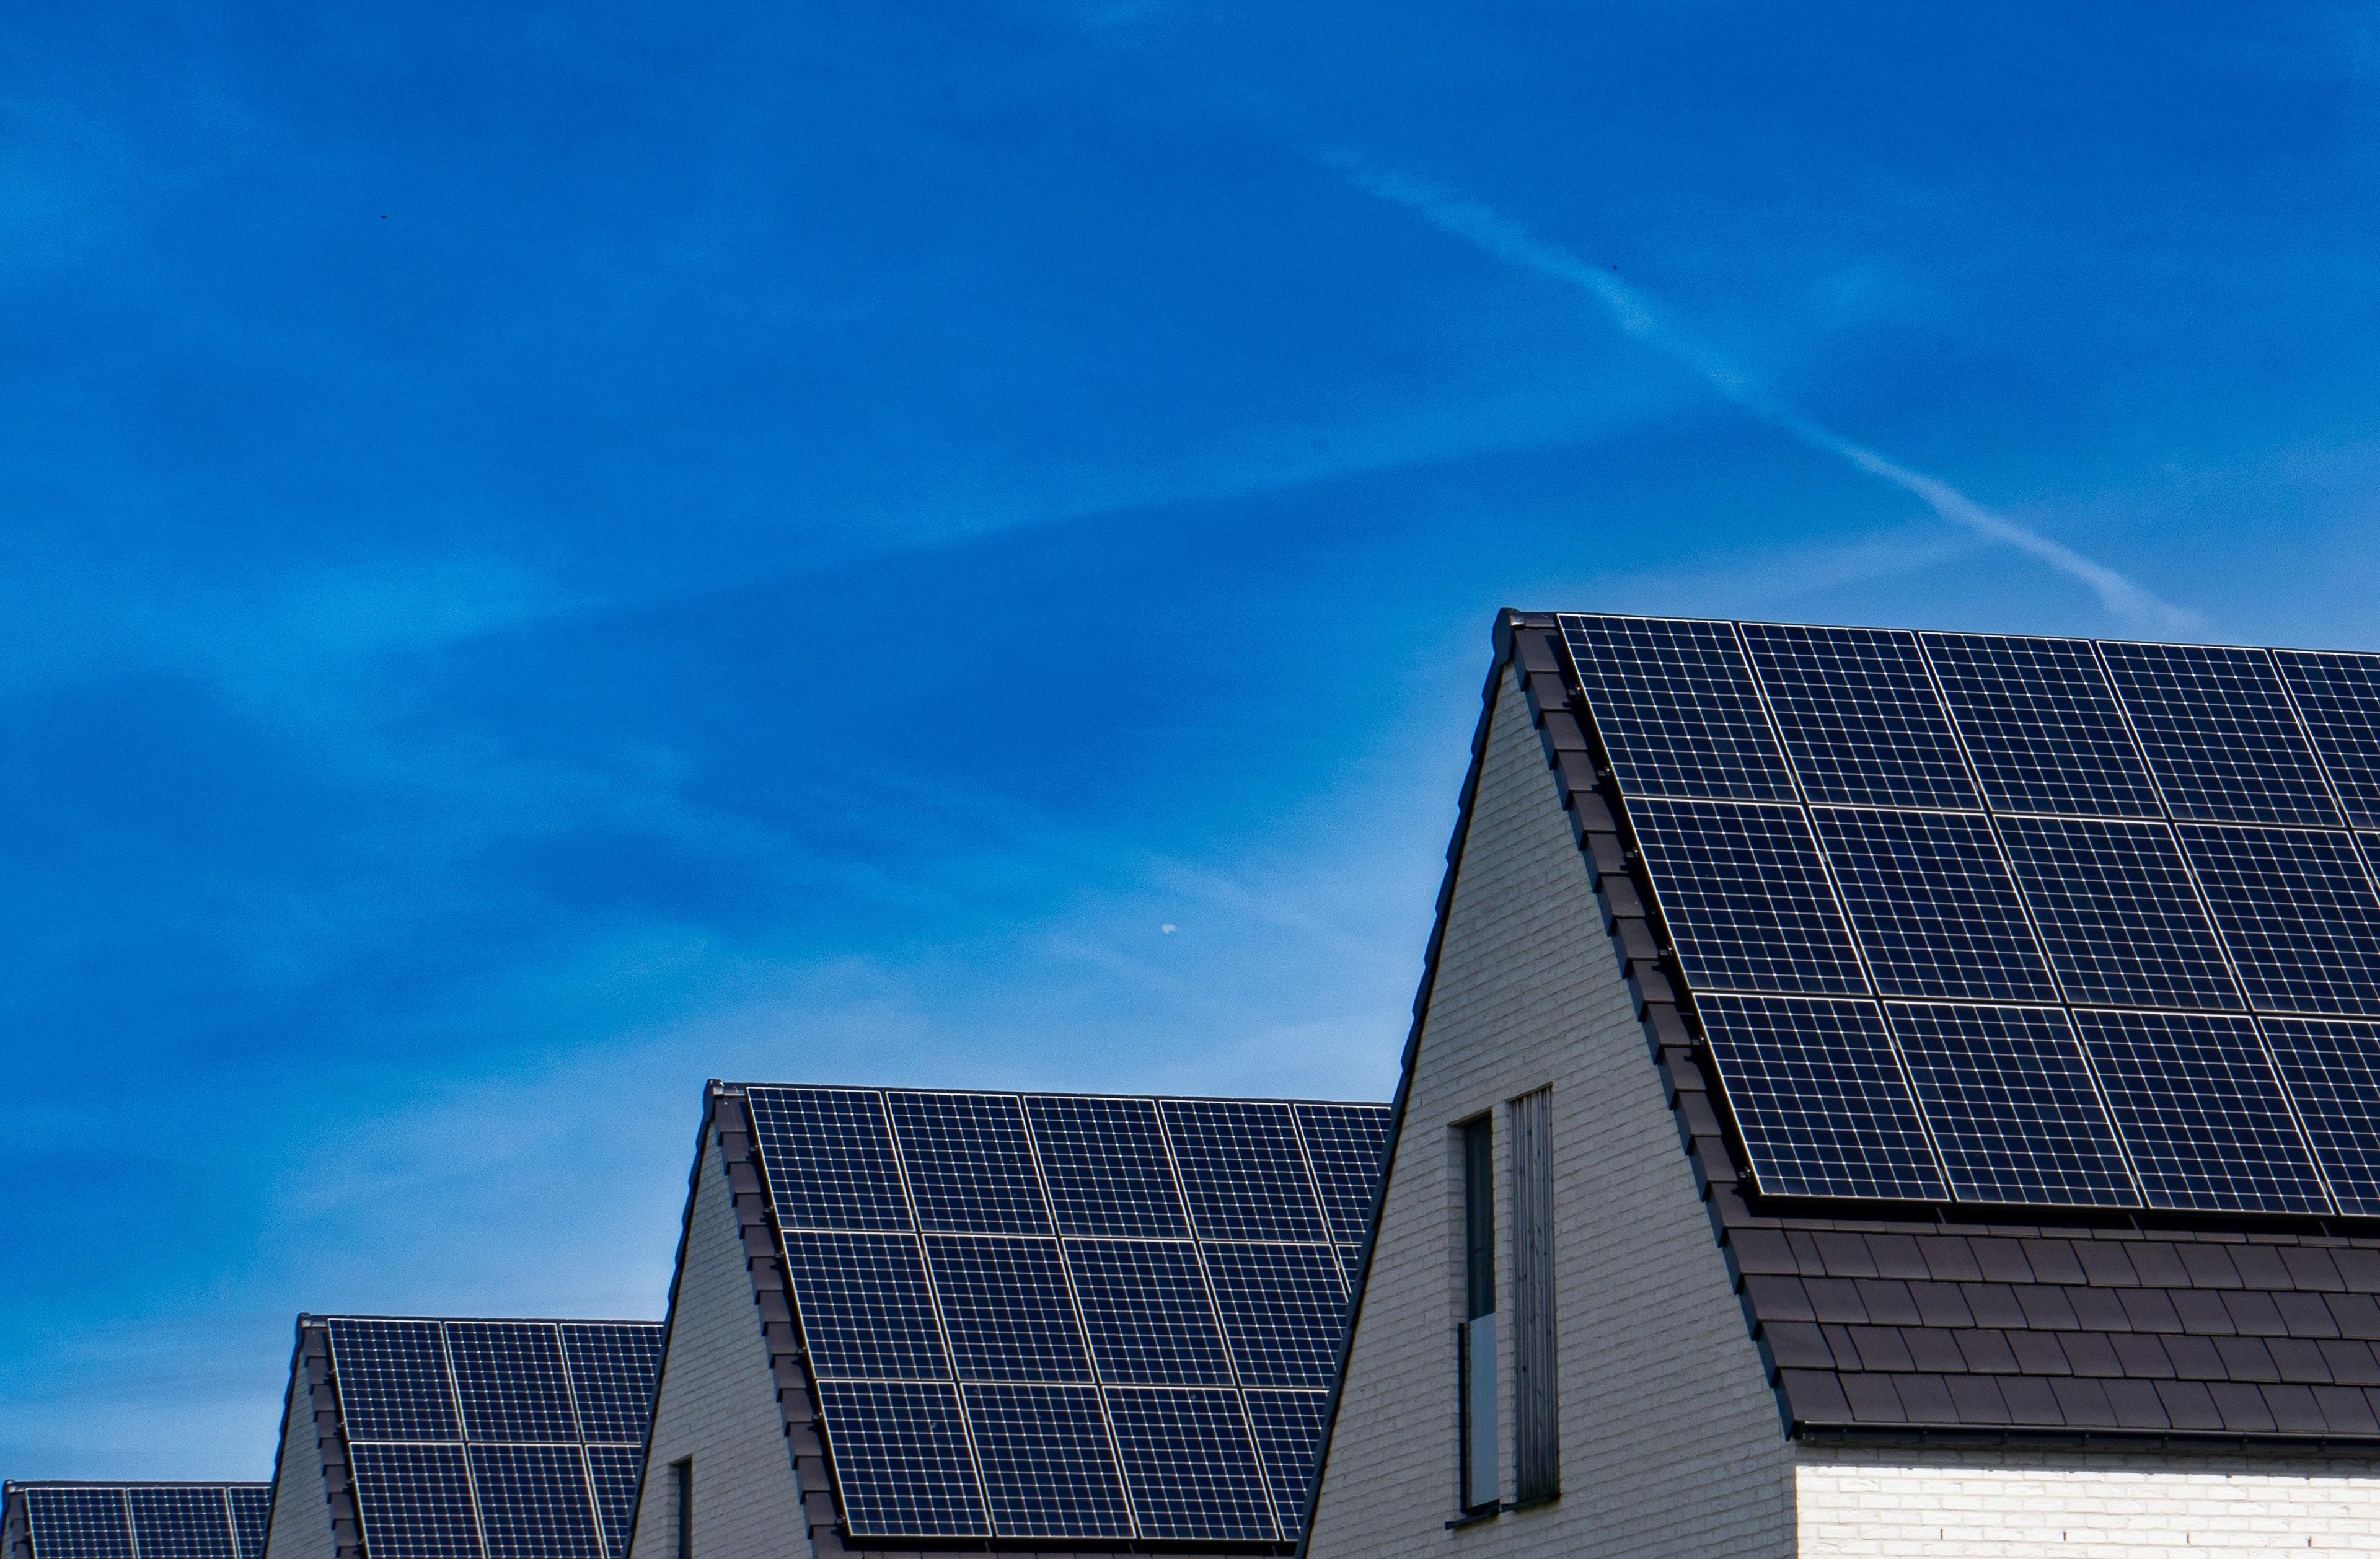 Solarpaneele auf den Dächern von Reihenhäusern